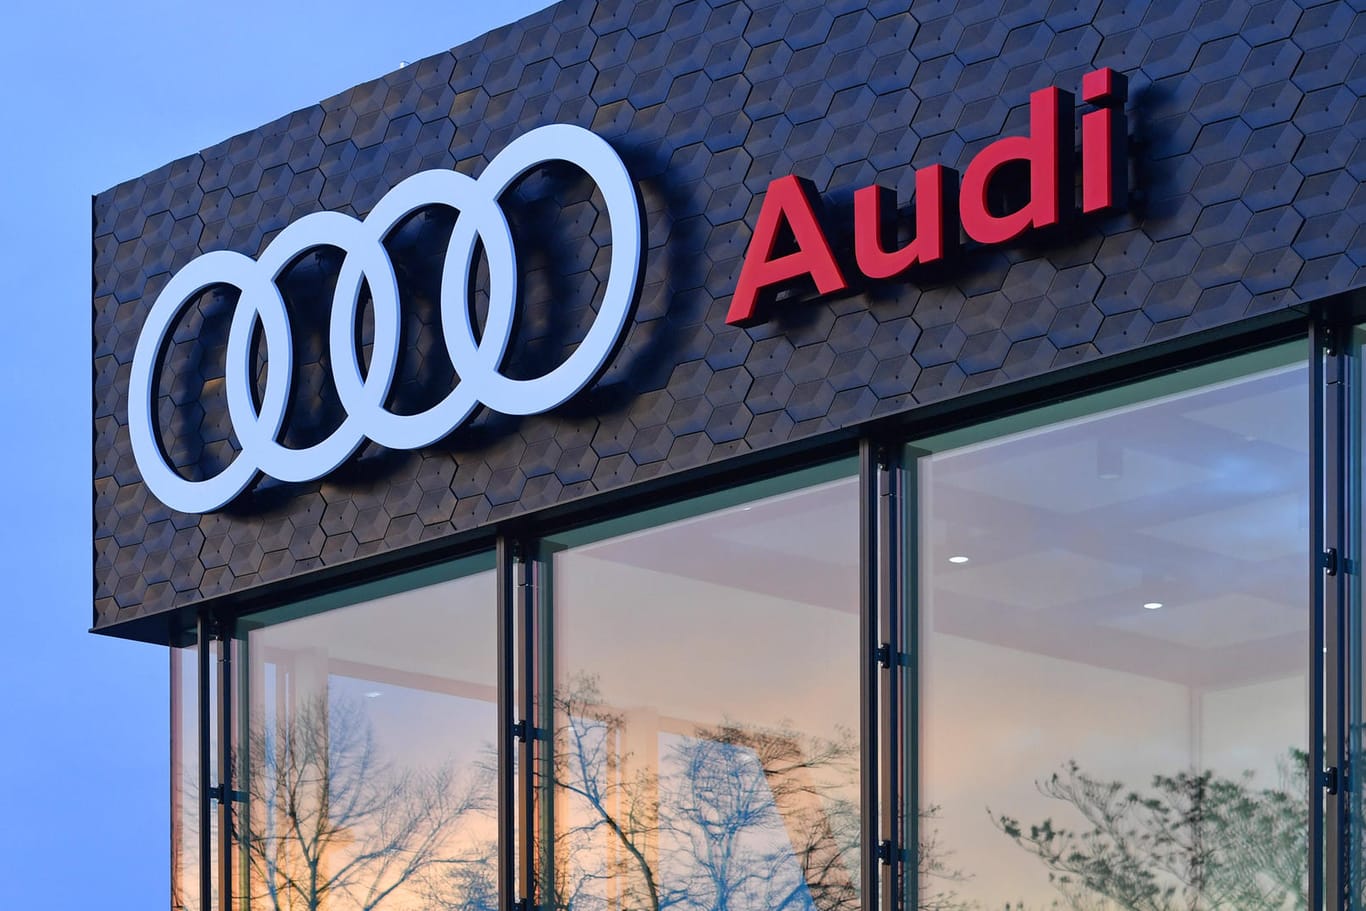 Audi: Die VW-Tochter wird keine neuen Verbrennungsmotoren mehr entwickeln.